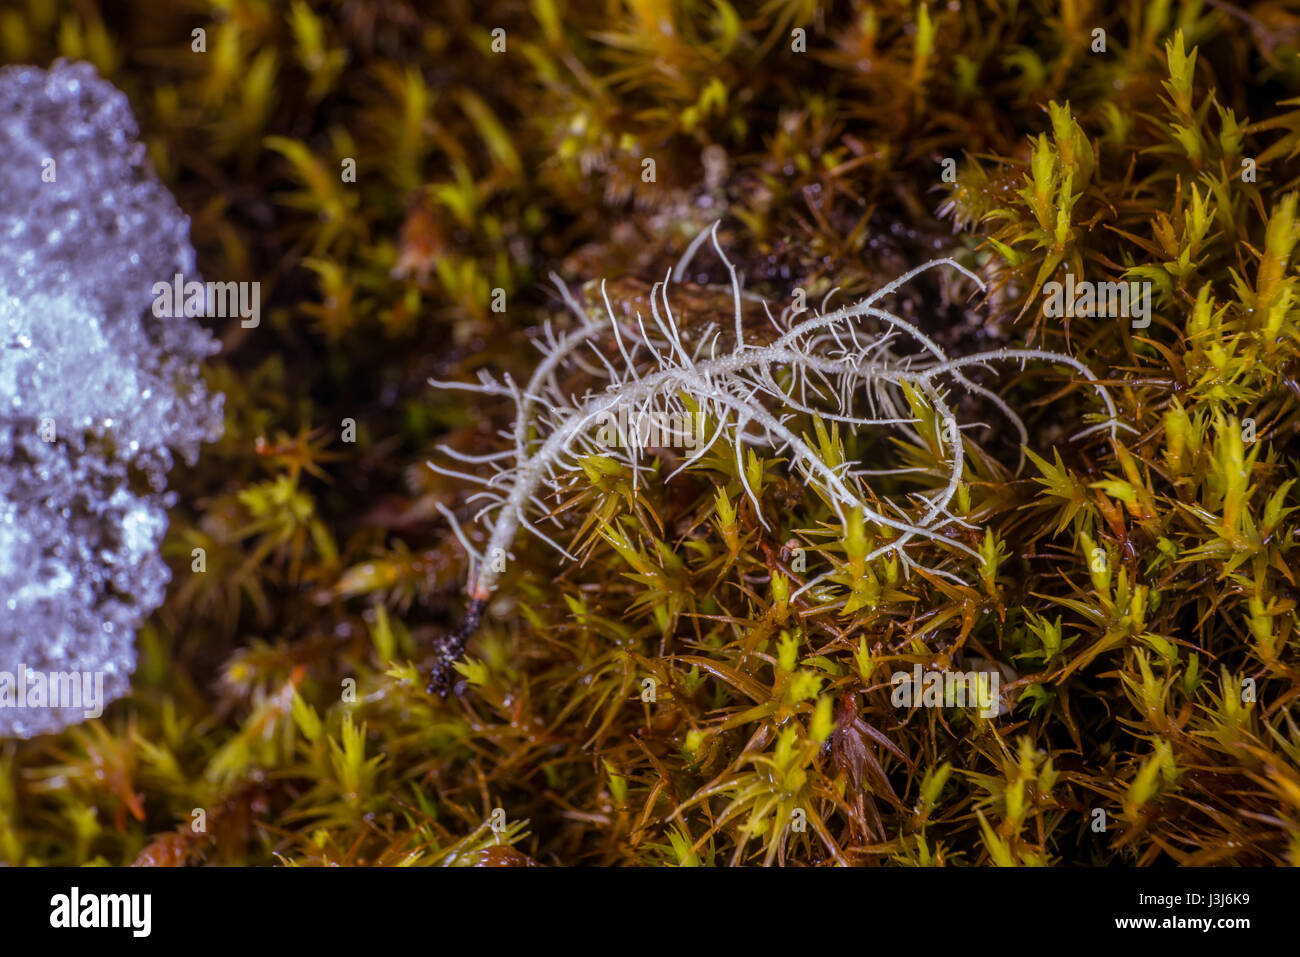 Lichen up-close Stock Photo